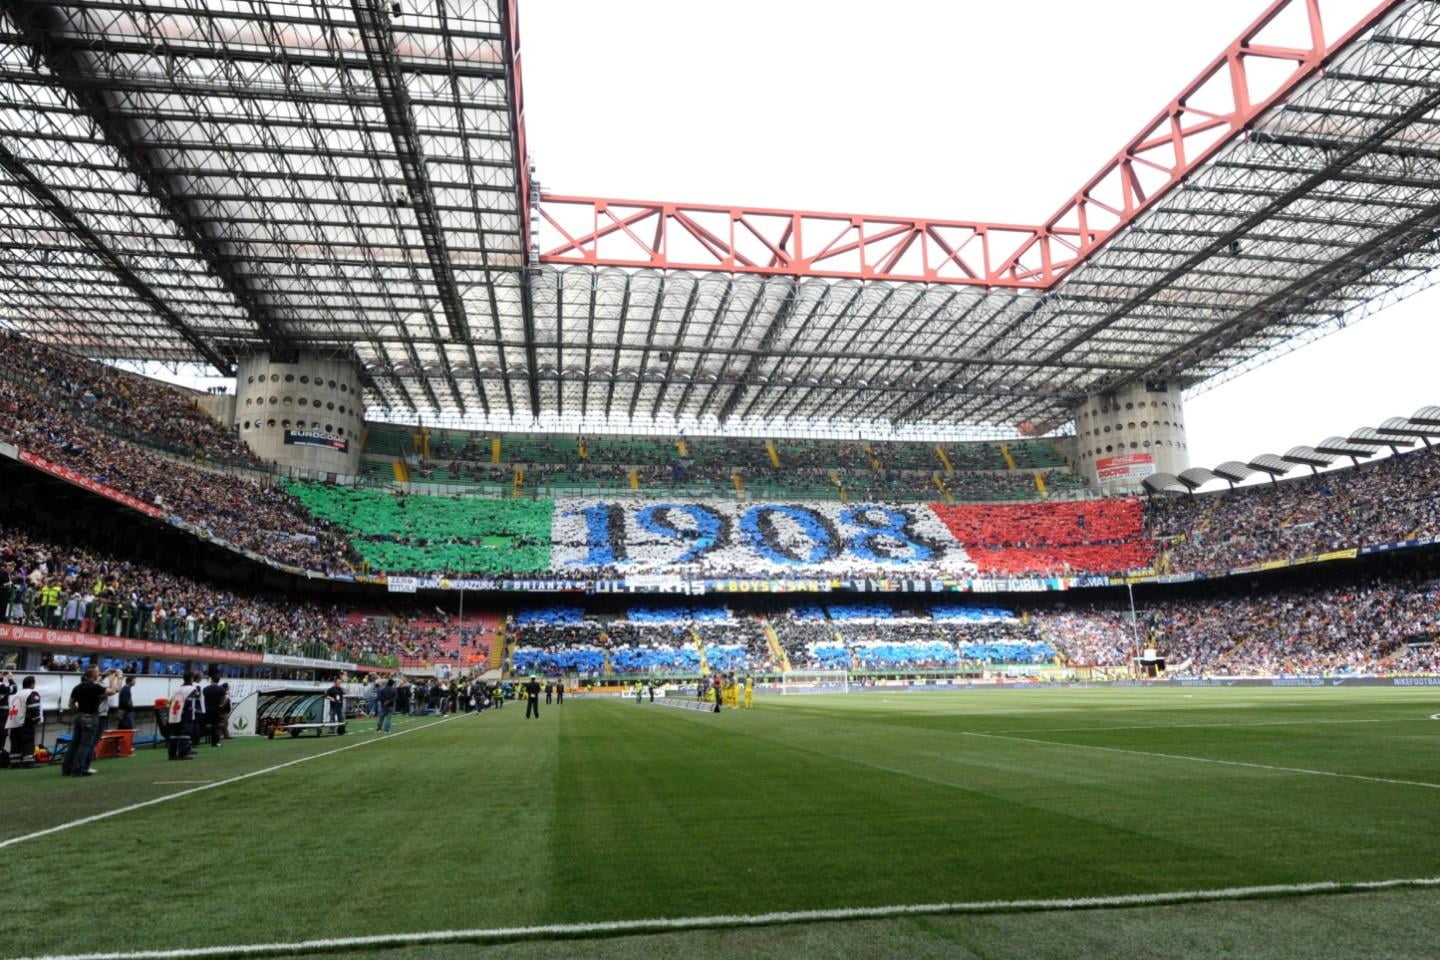 Inter Milan - Genoa CFC, 1 marsden 20:45